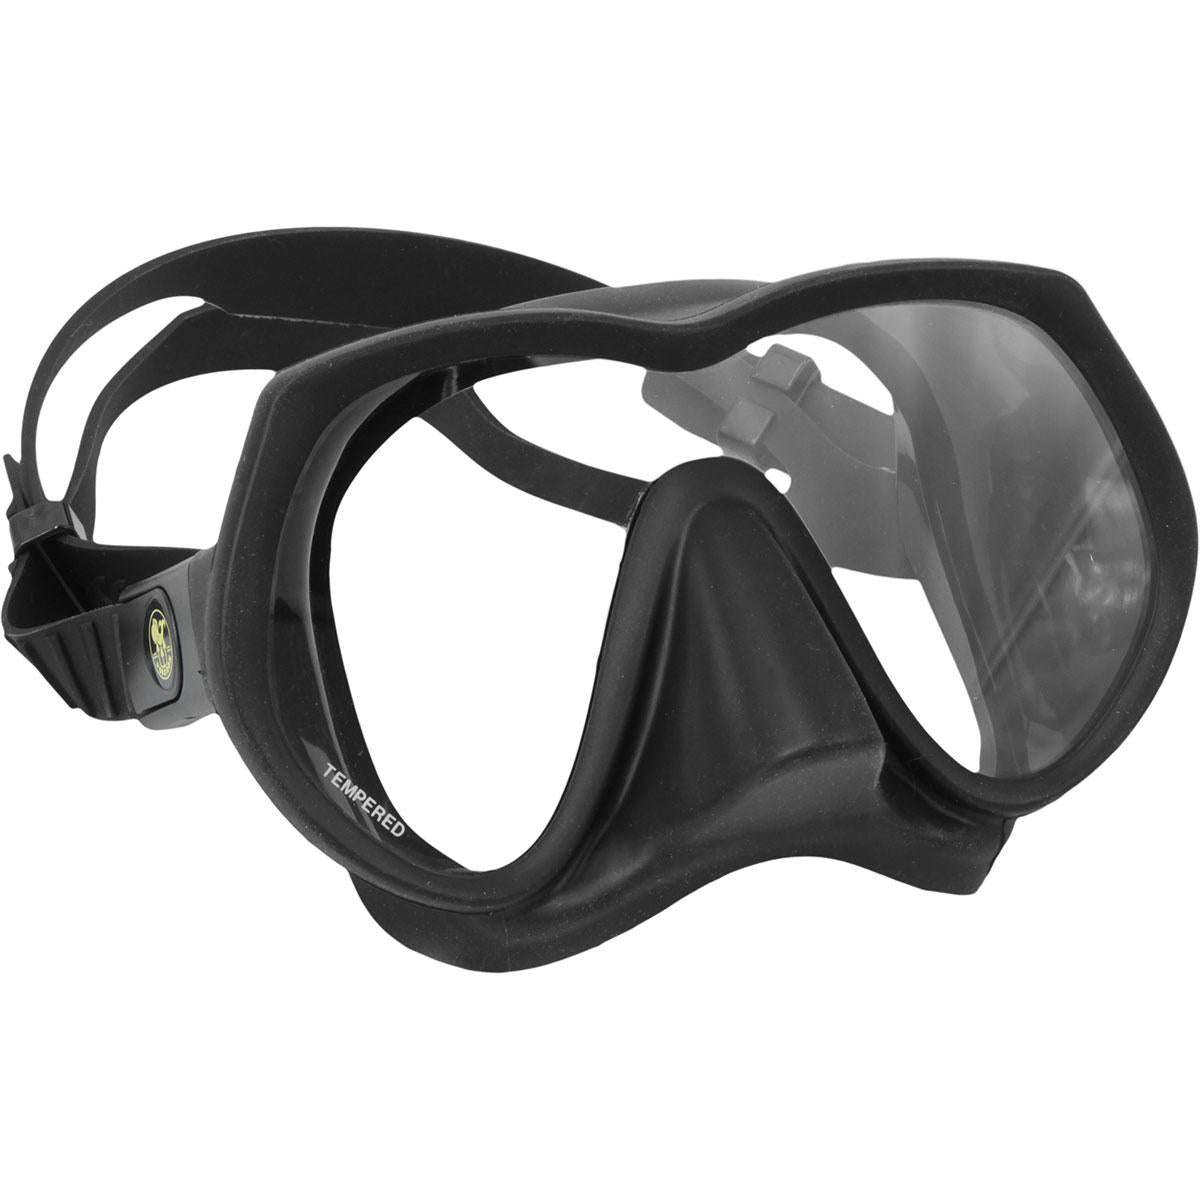 Poseidon Mask Strap Neoprene Black Velcro